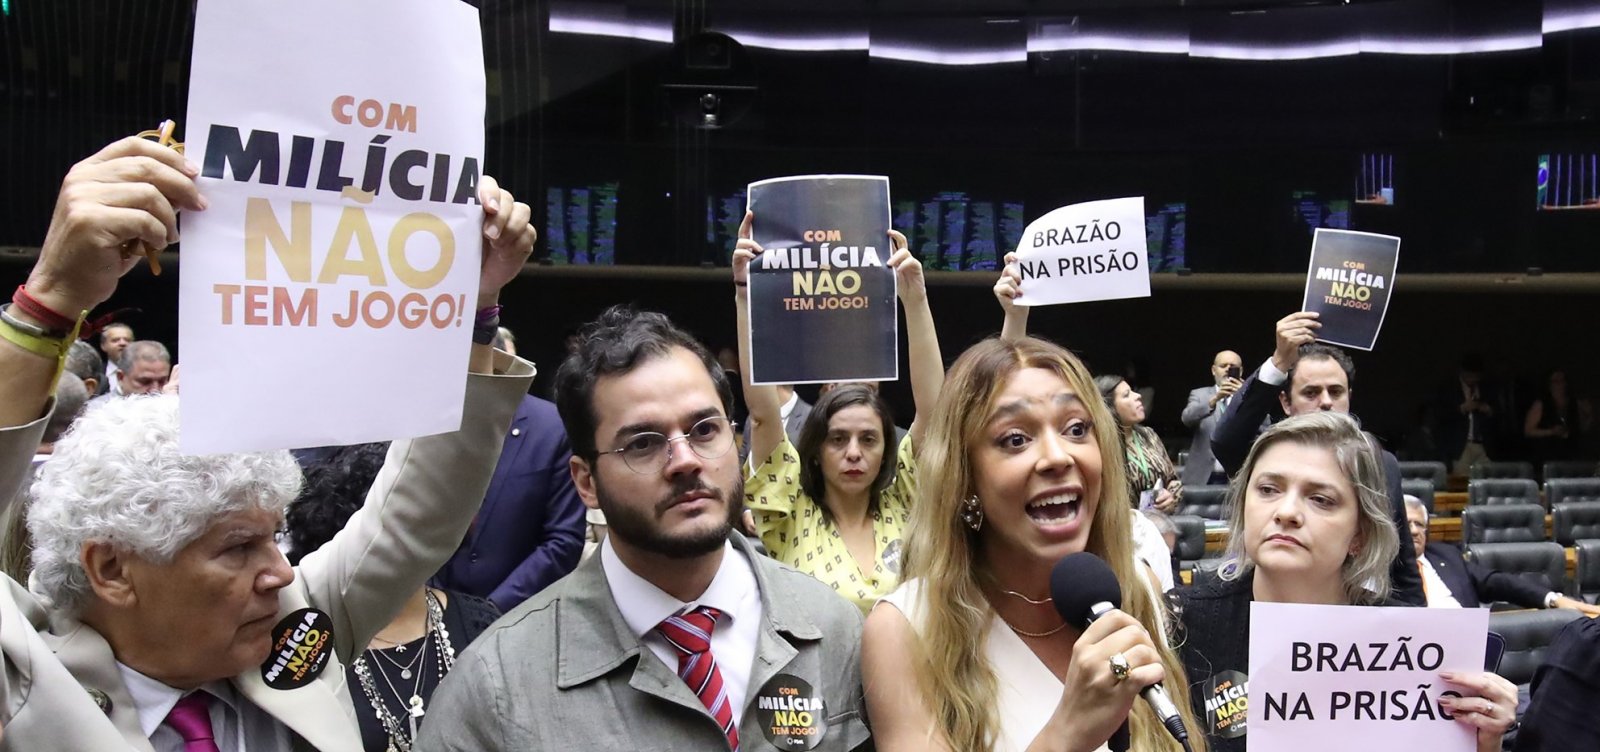 Foi por pouco: Com margem apertada, sessão que manteve Brazão na cadeia expõe força do corporativismo parlamentar